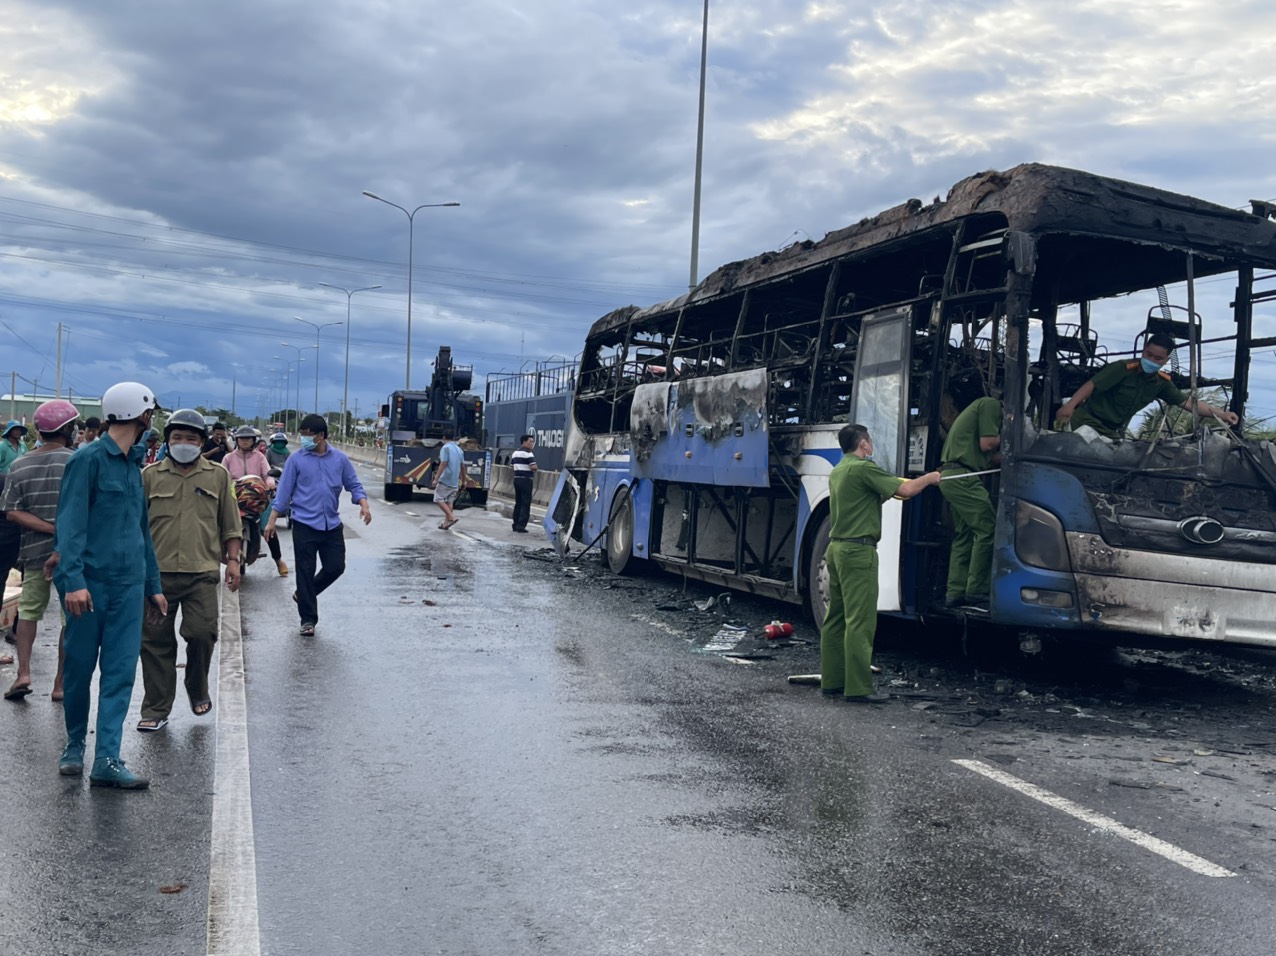 Bình Thuận: Xe chở hơn 40 người cháy trên Quốc lộ 1, hành khách hoảng loạn tìm cách thoát thân - Ảnh 1.